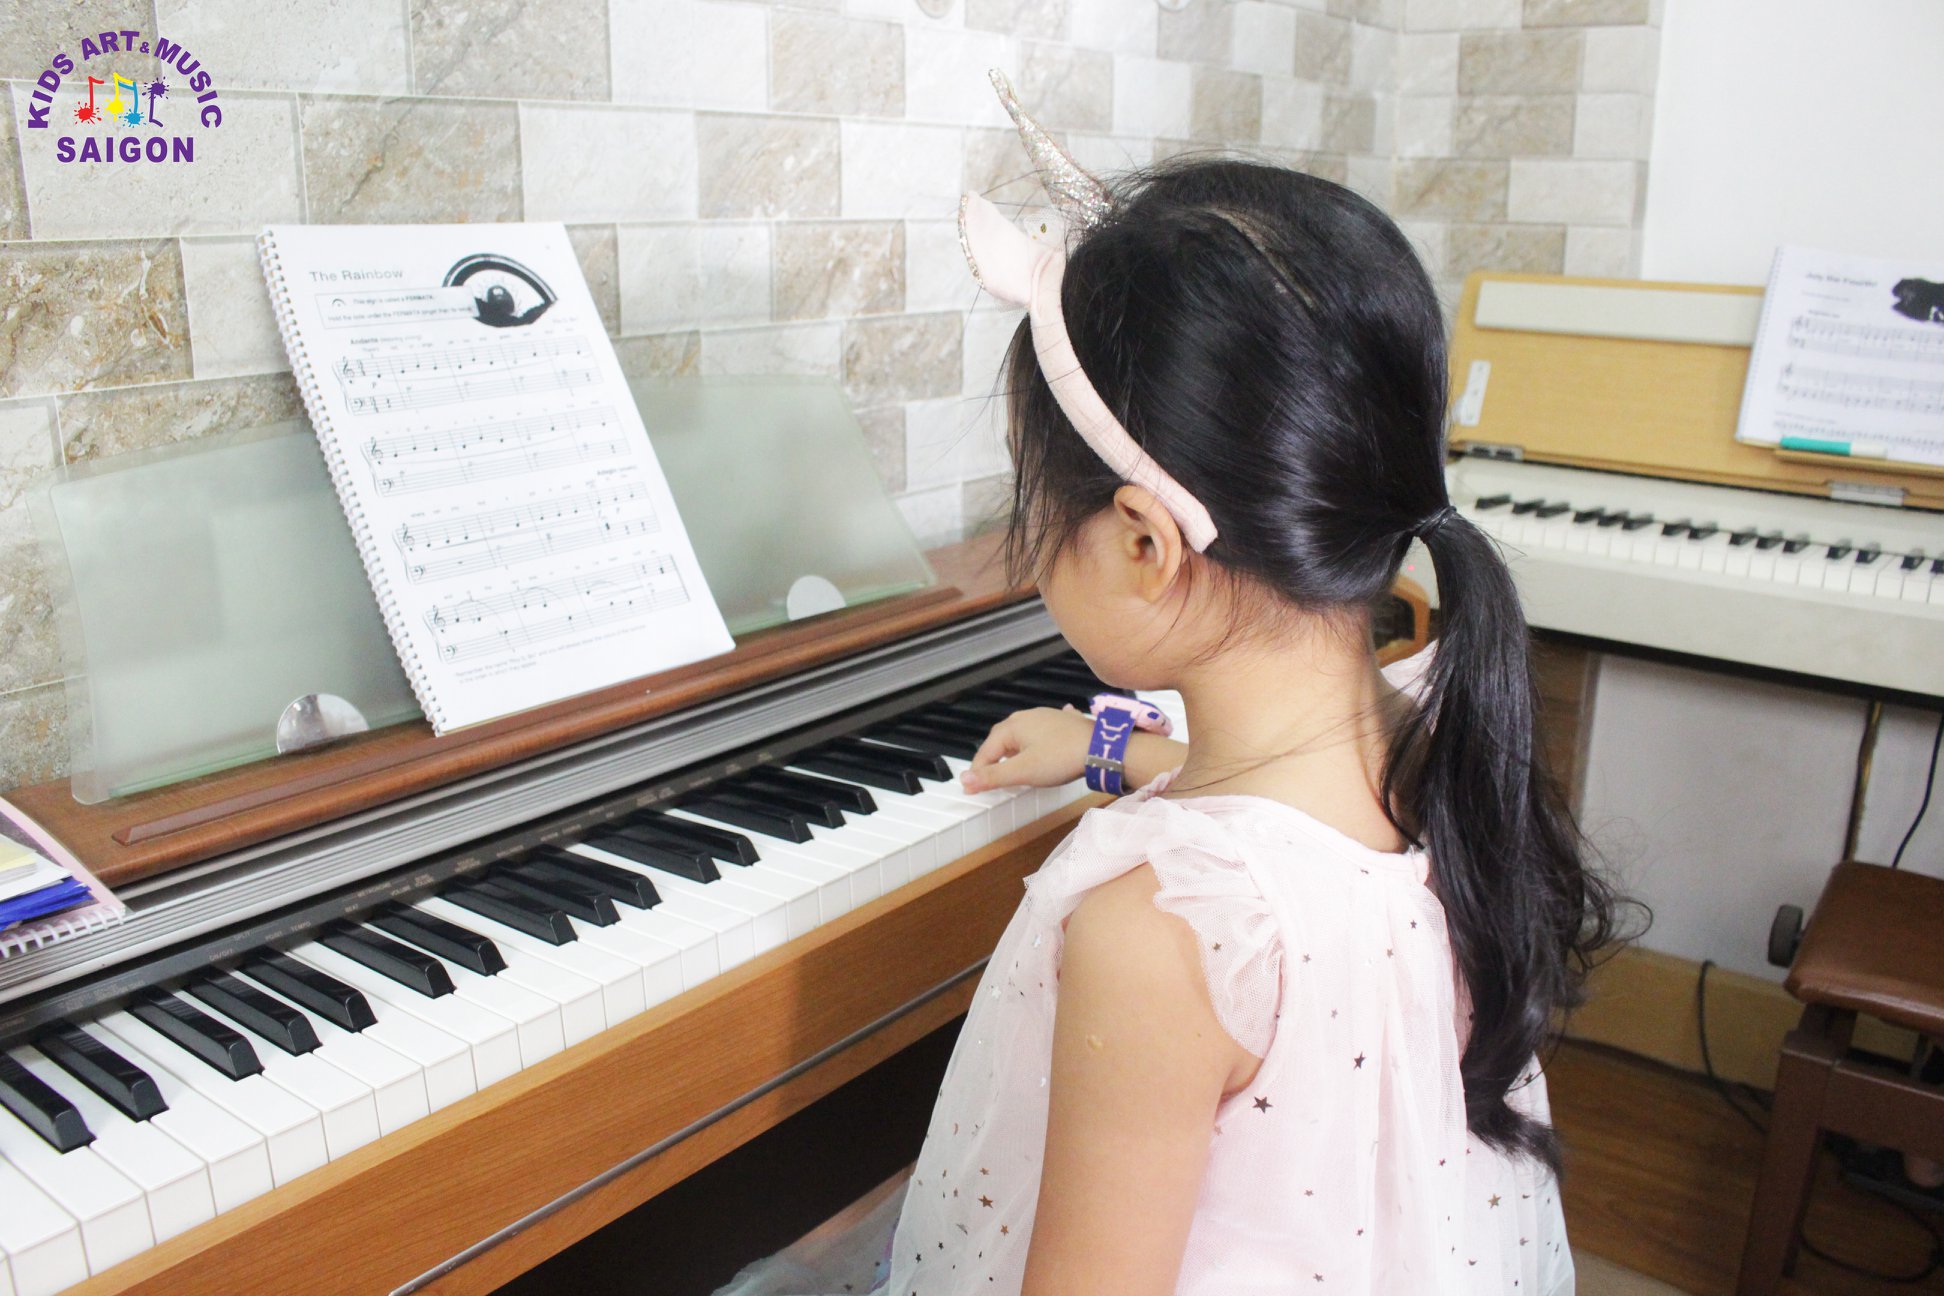 Tham khảo cách dạy đàn piano cho trẻ tại nhà hiệu quả - hình ảnh 4